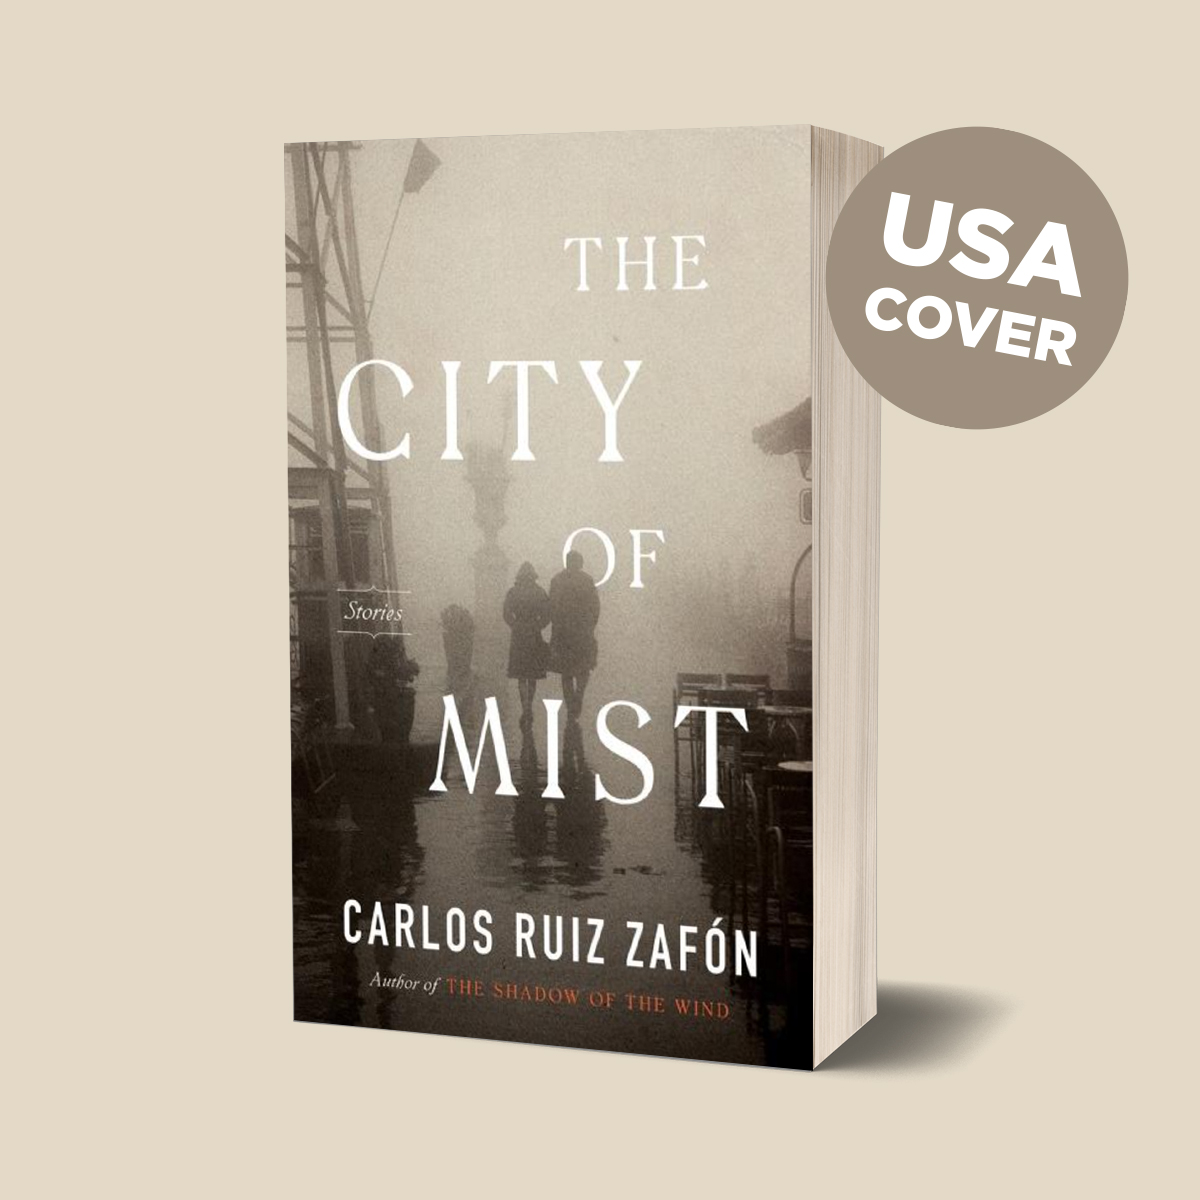 «La Ciudad de Vapor» de Carlos Ruiz Zafón llegará a las librerías de Reino Unido y Estados Unidos durante el mes de noviembre. Estas serán las portadas de ambas ediciones. ➡️ bit.ly/2WRGixN